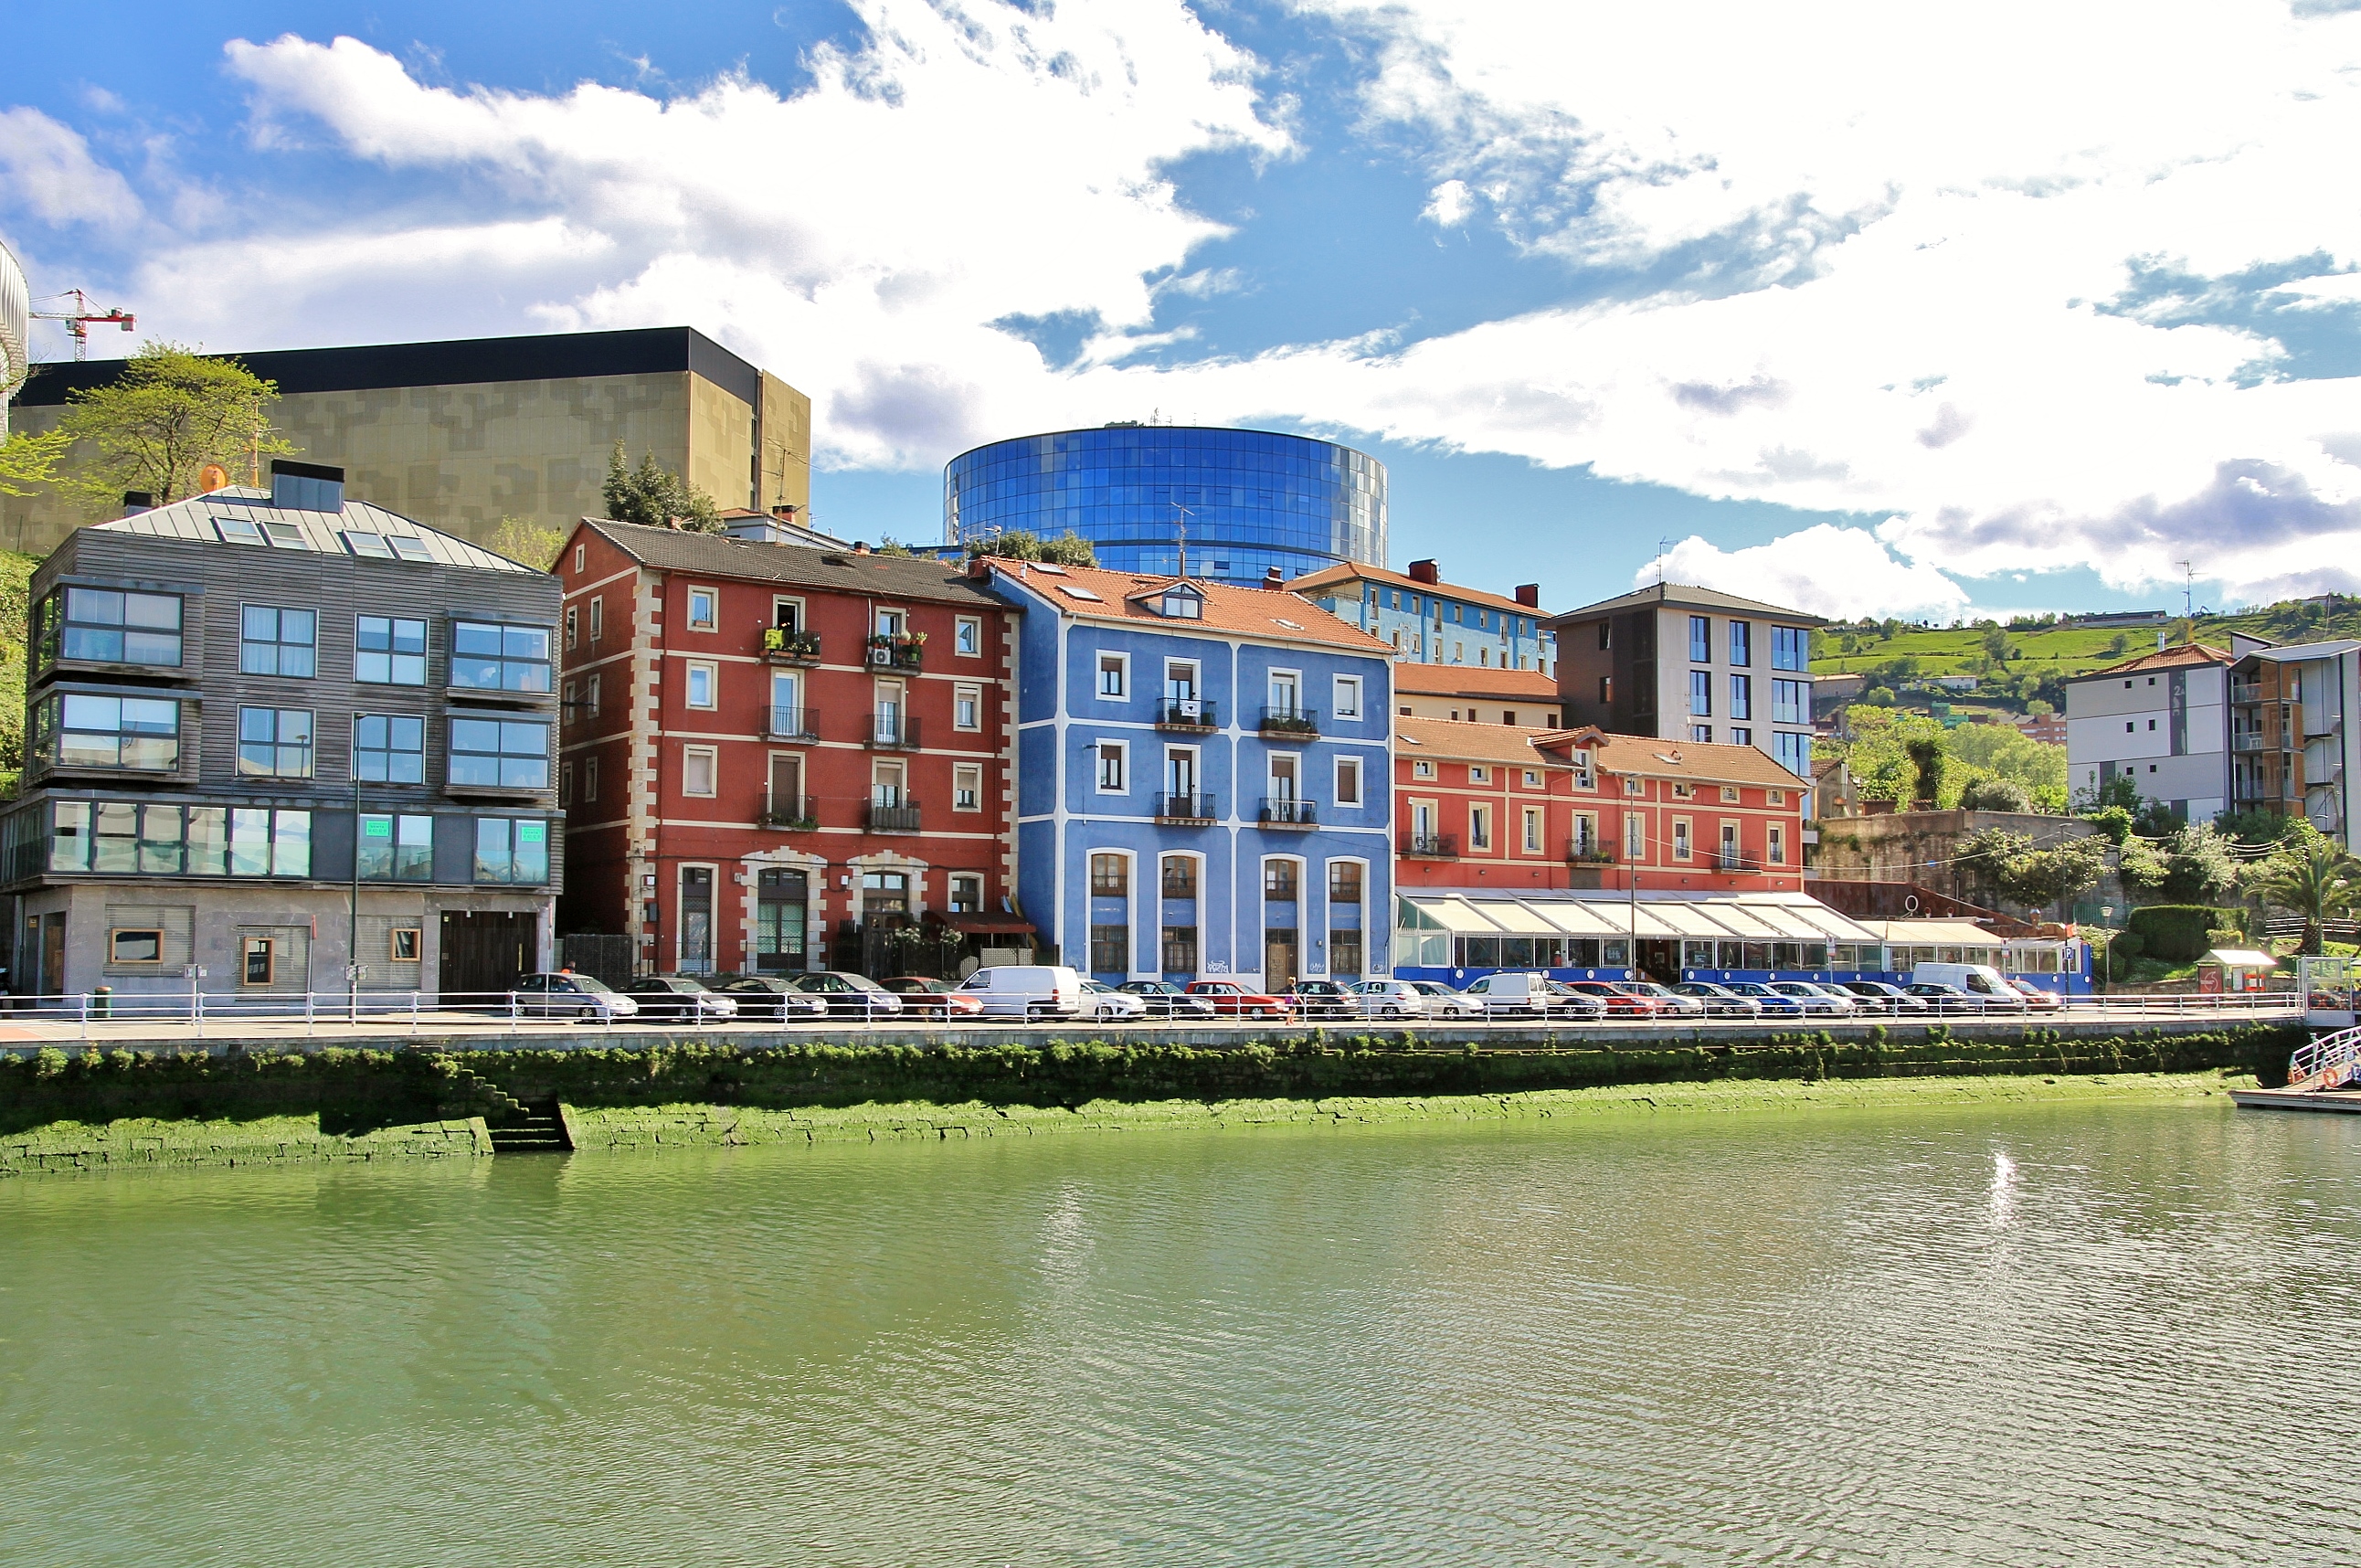 Foto: Navegando por la Ria de Bilbao - Bilbao (Vizcaya), España